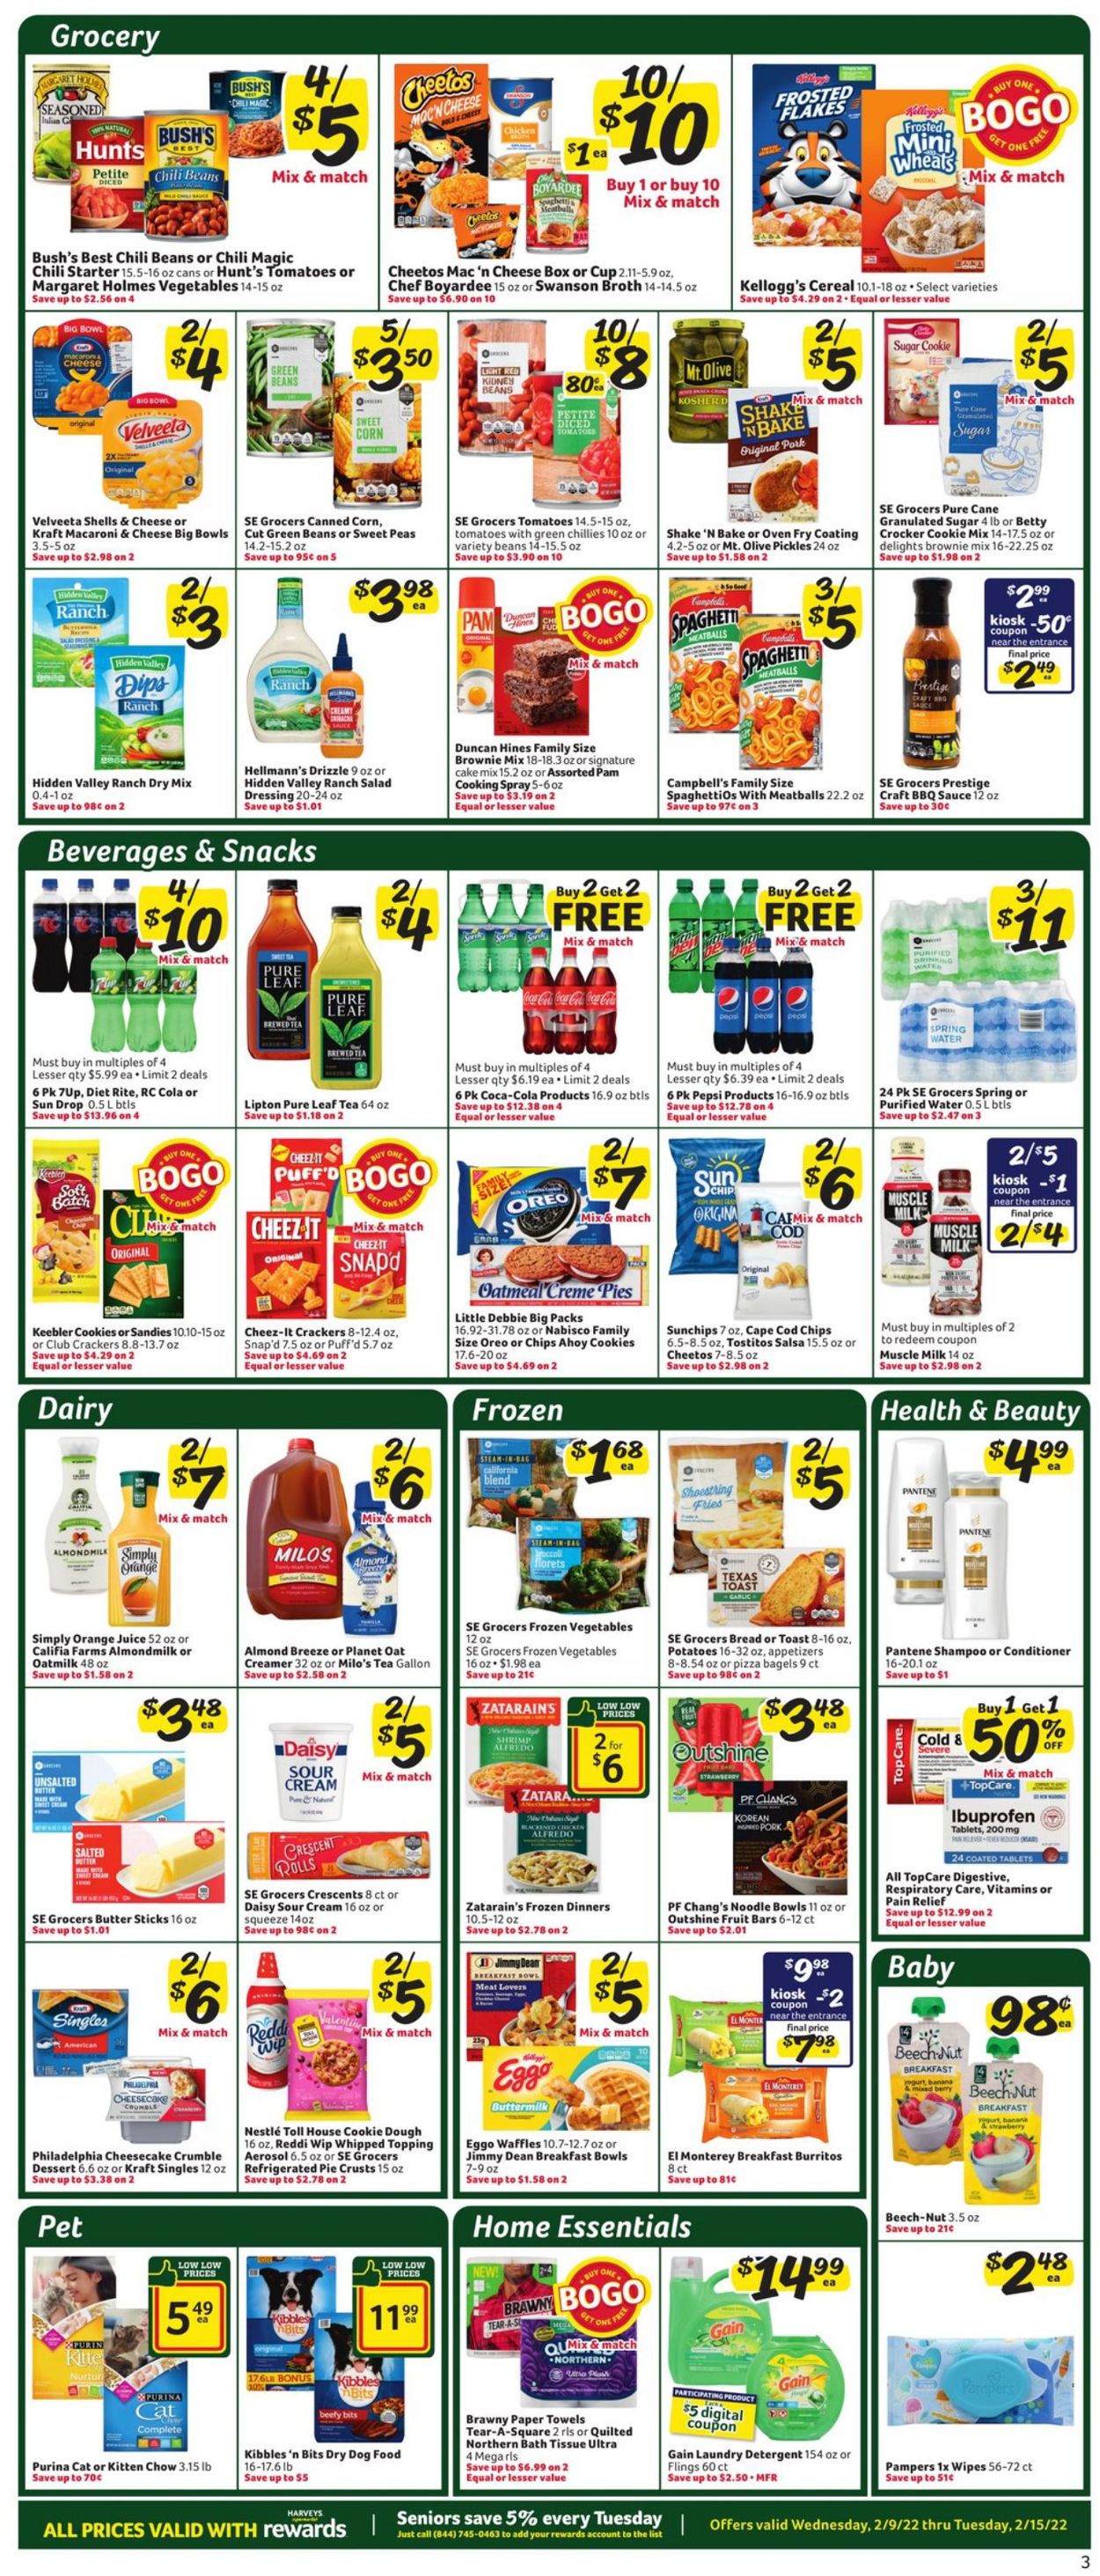 Catalogue Harveys Supermarket from 02/09/2022